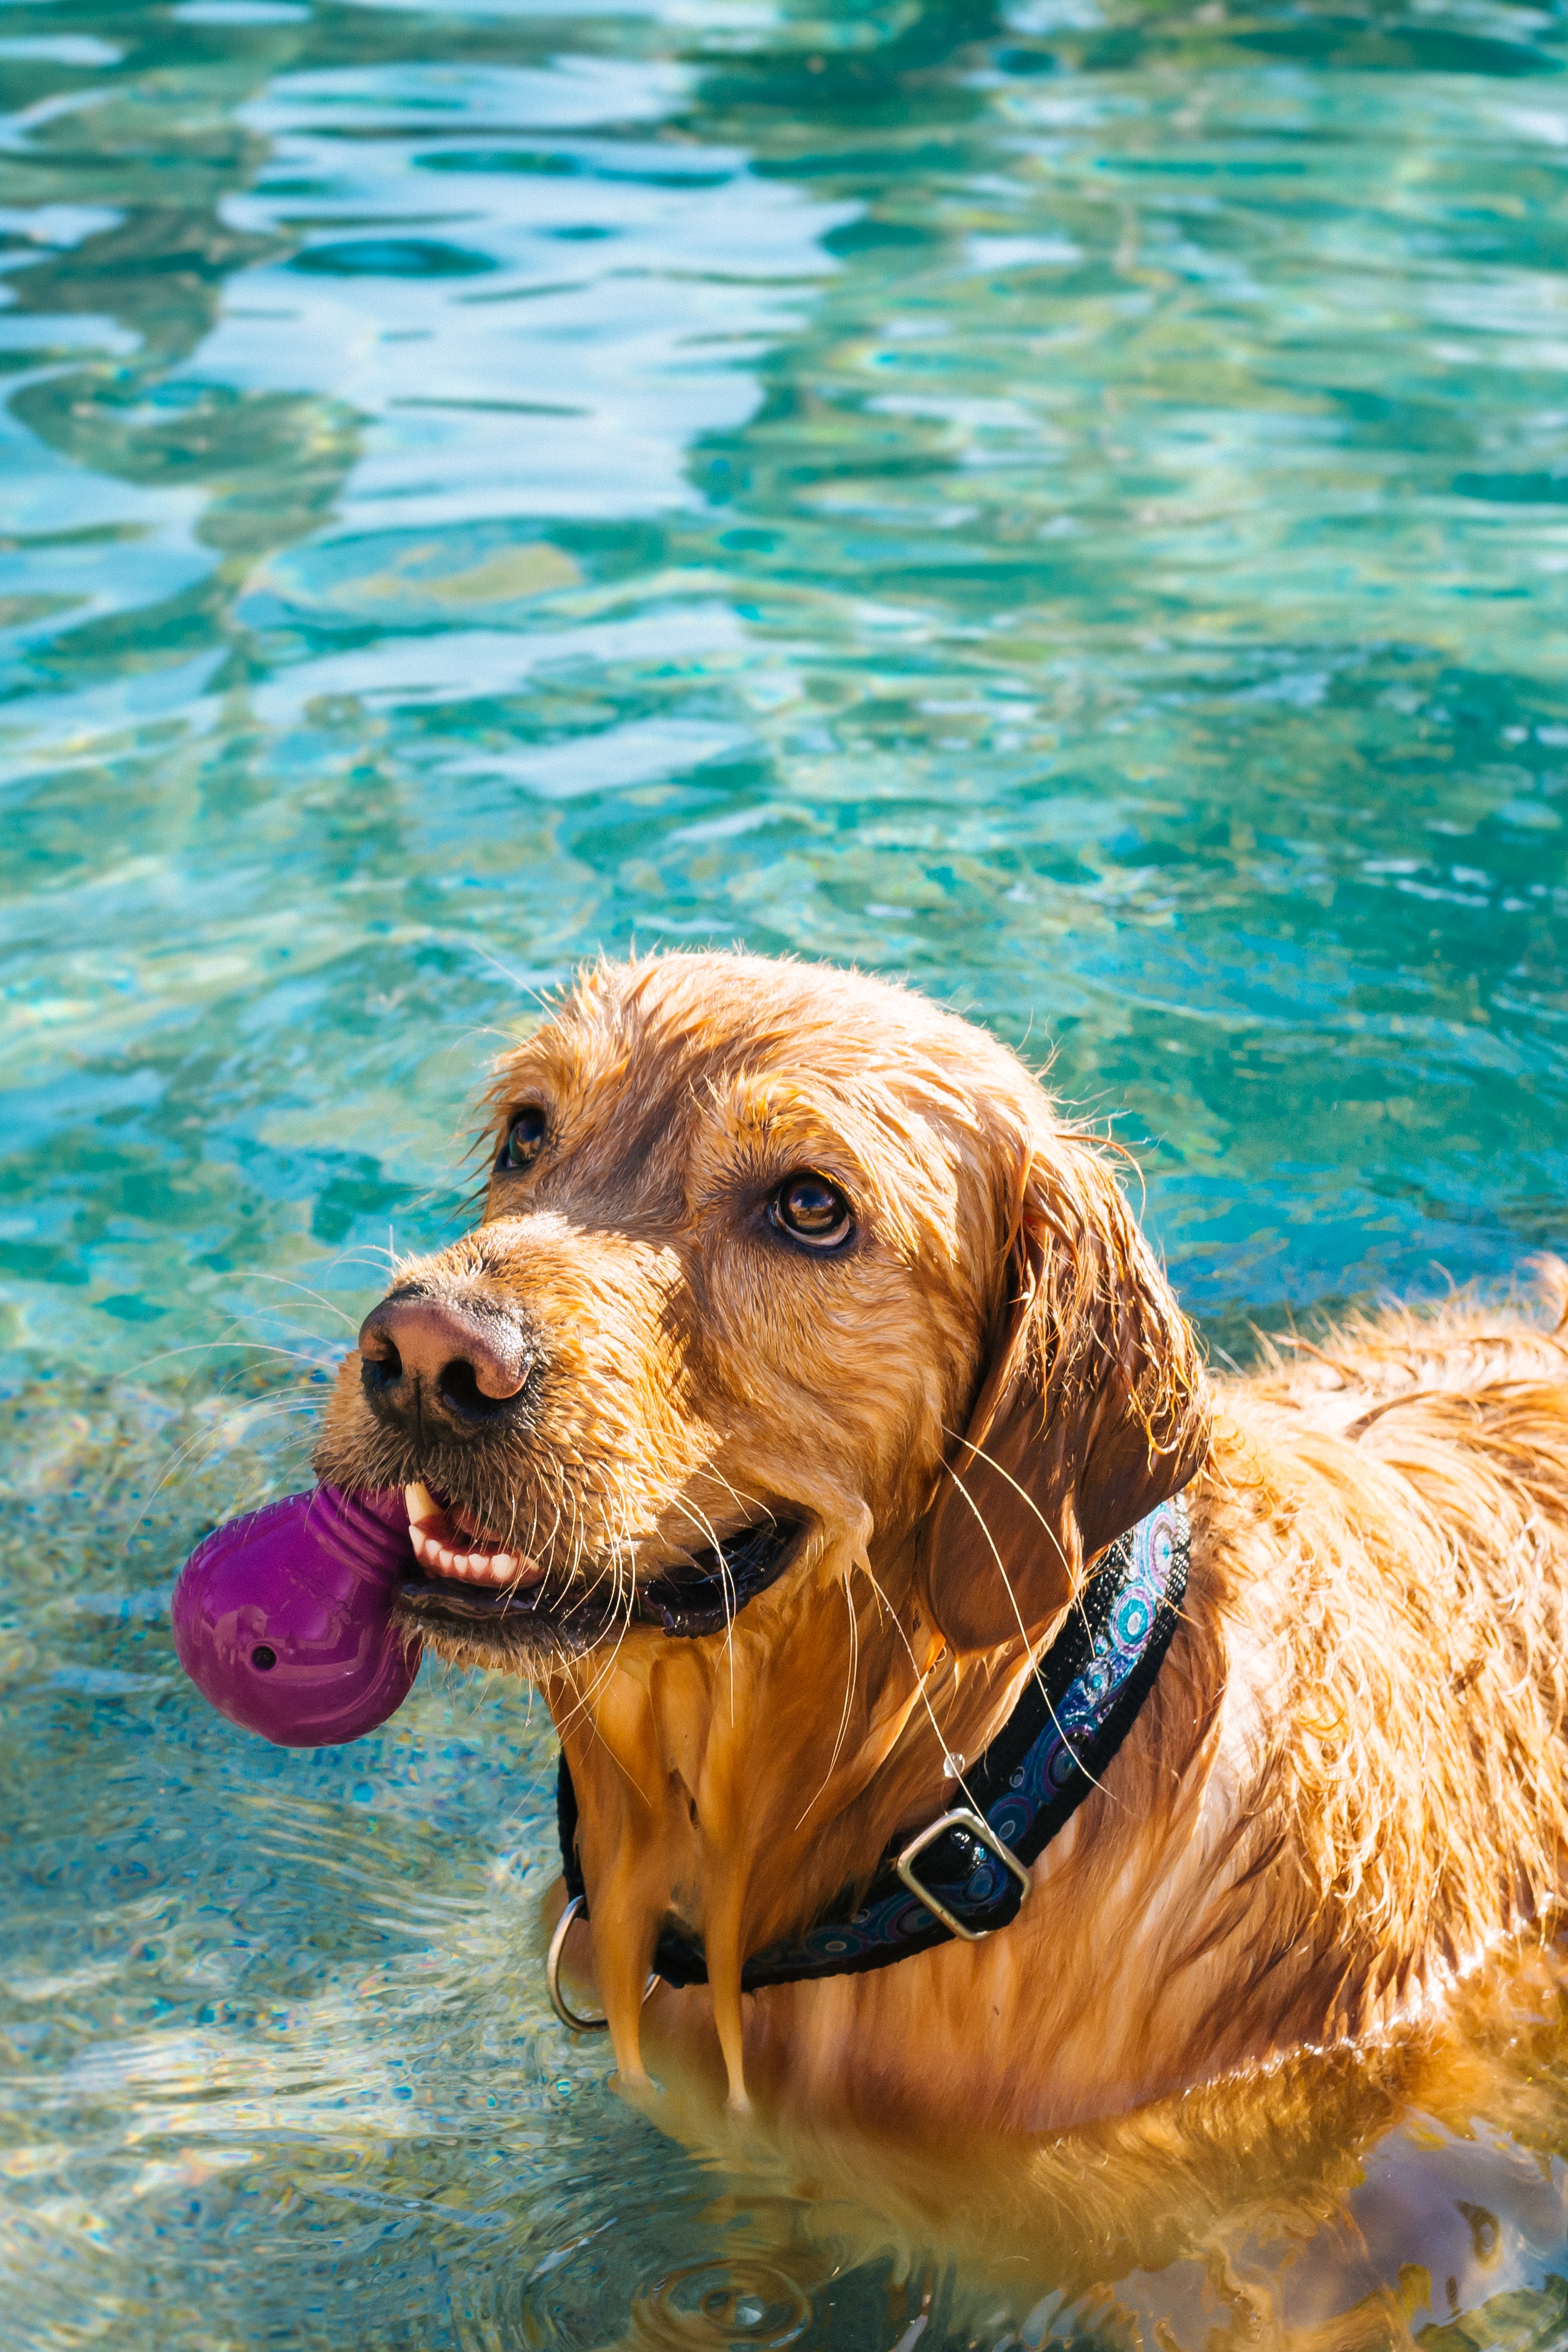 Es seguro meter a mi perro en la piscina? - Blog Outlet Piscinas